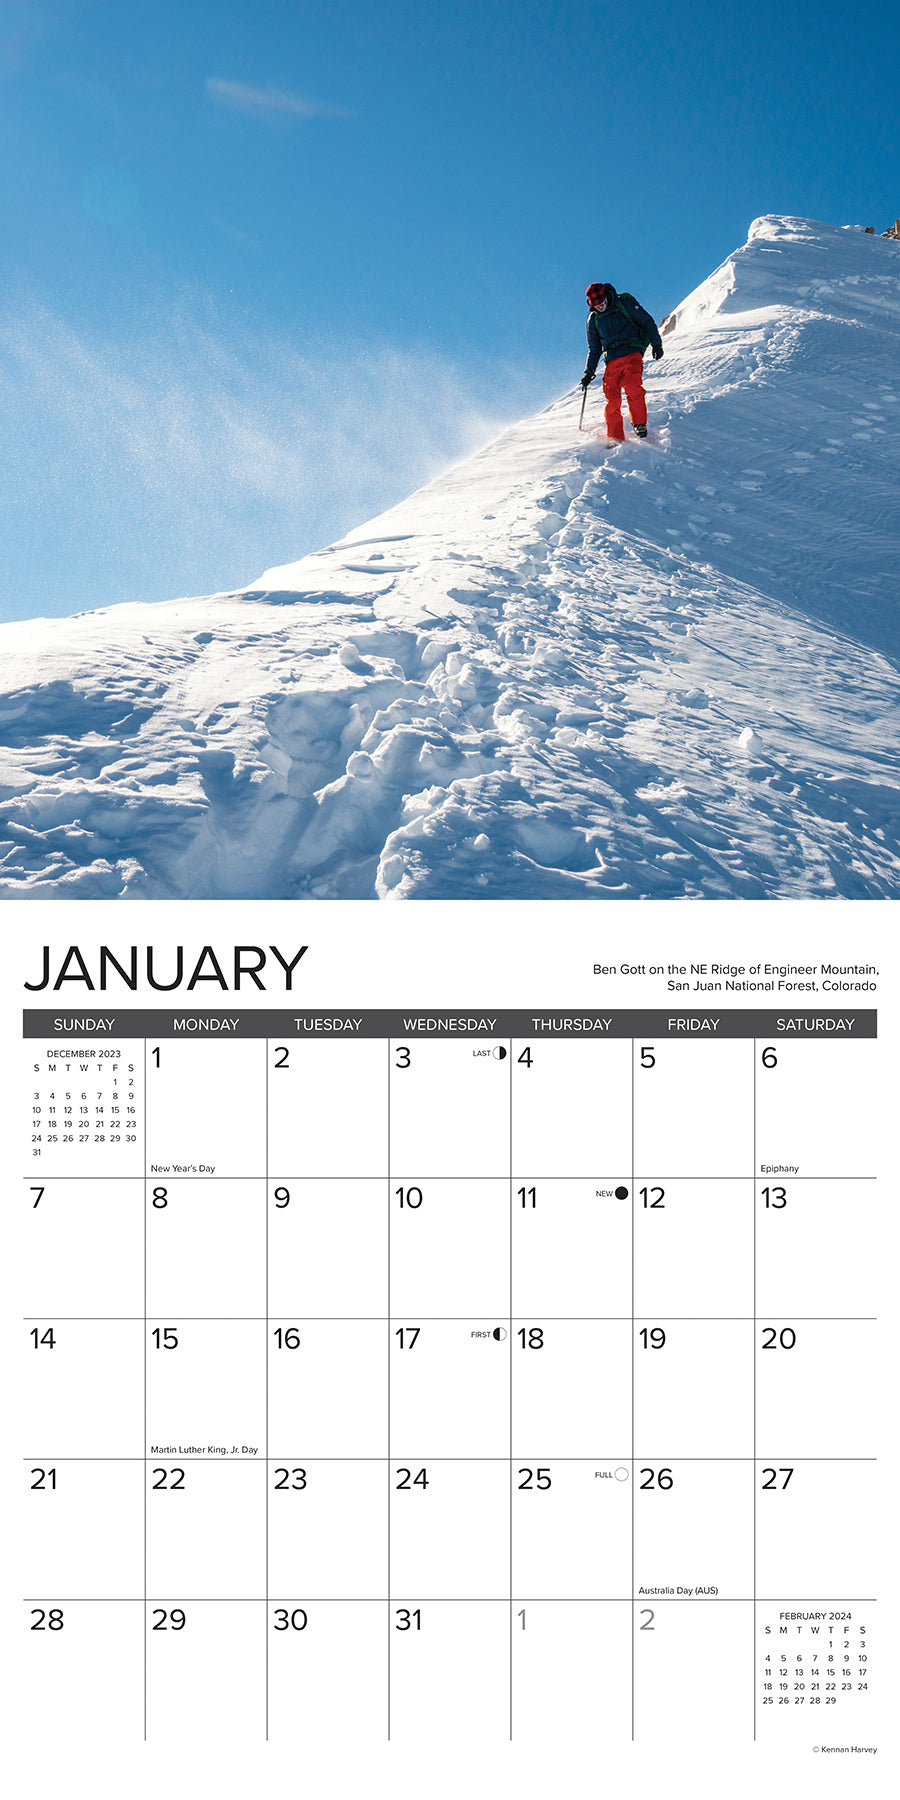 2024 Climbing - Wall Calendar